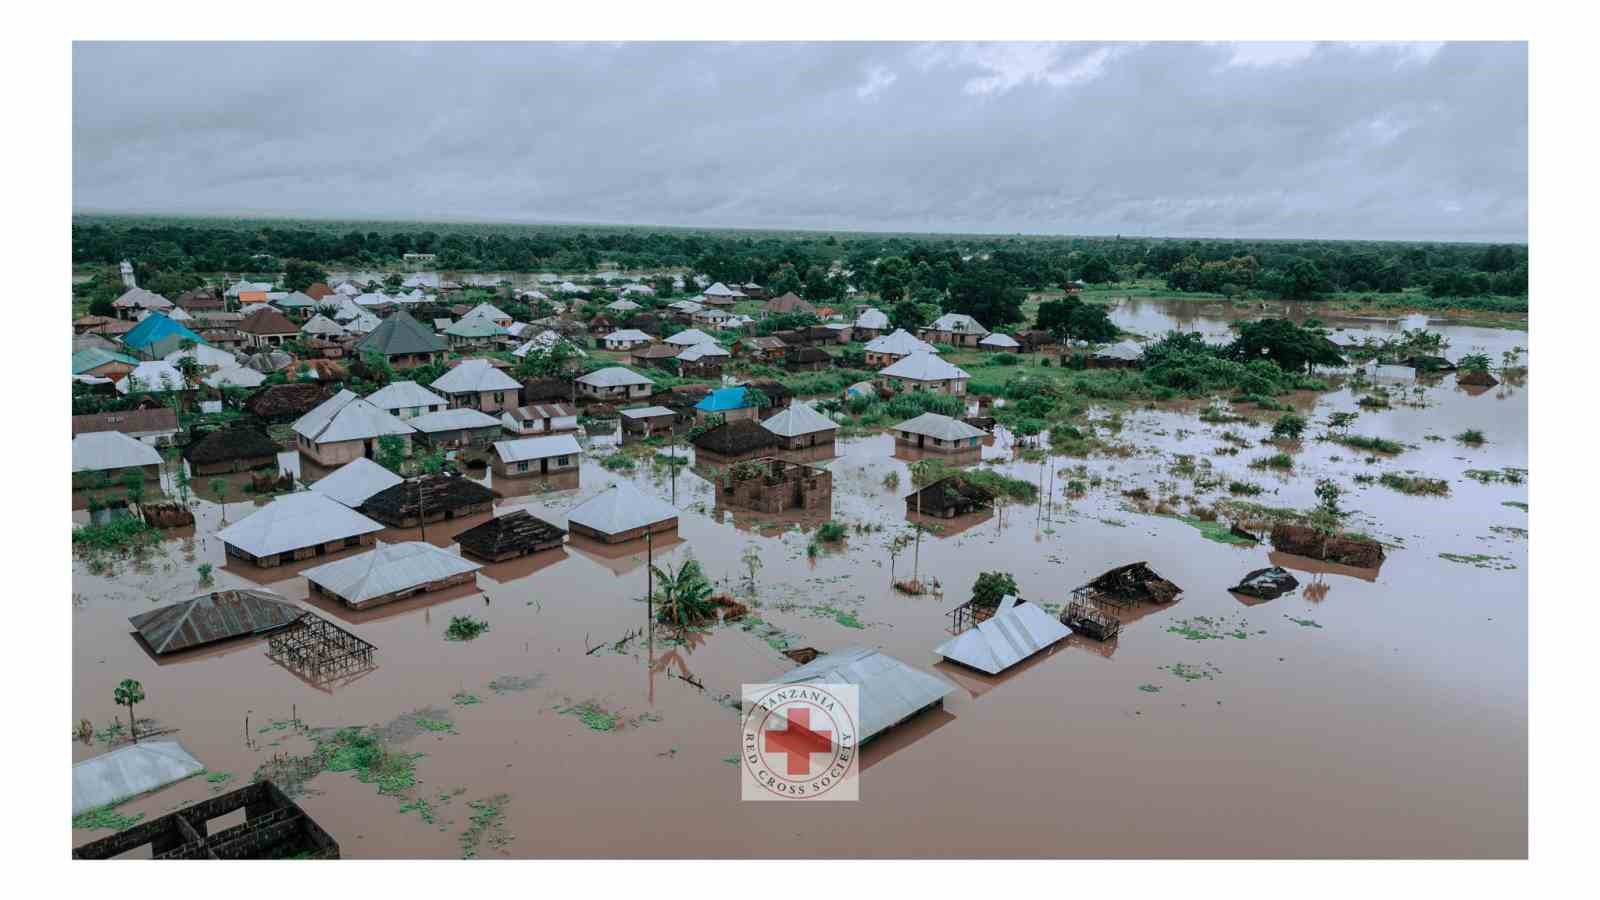 Tanzanya ve Kenya’da sel felaketi: 71 ölü
